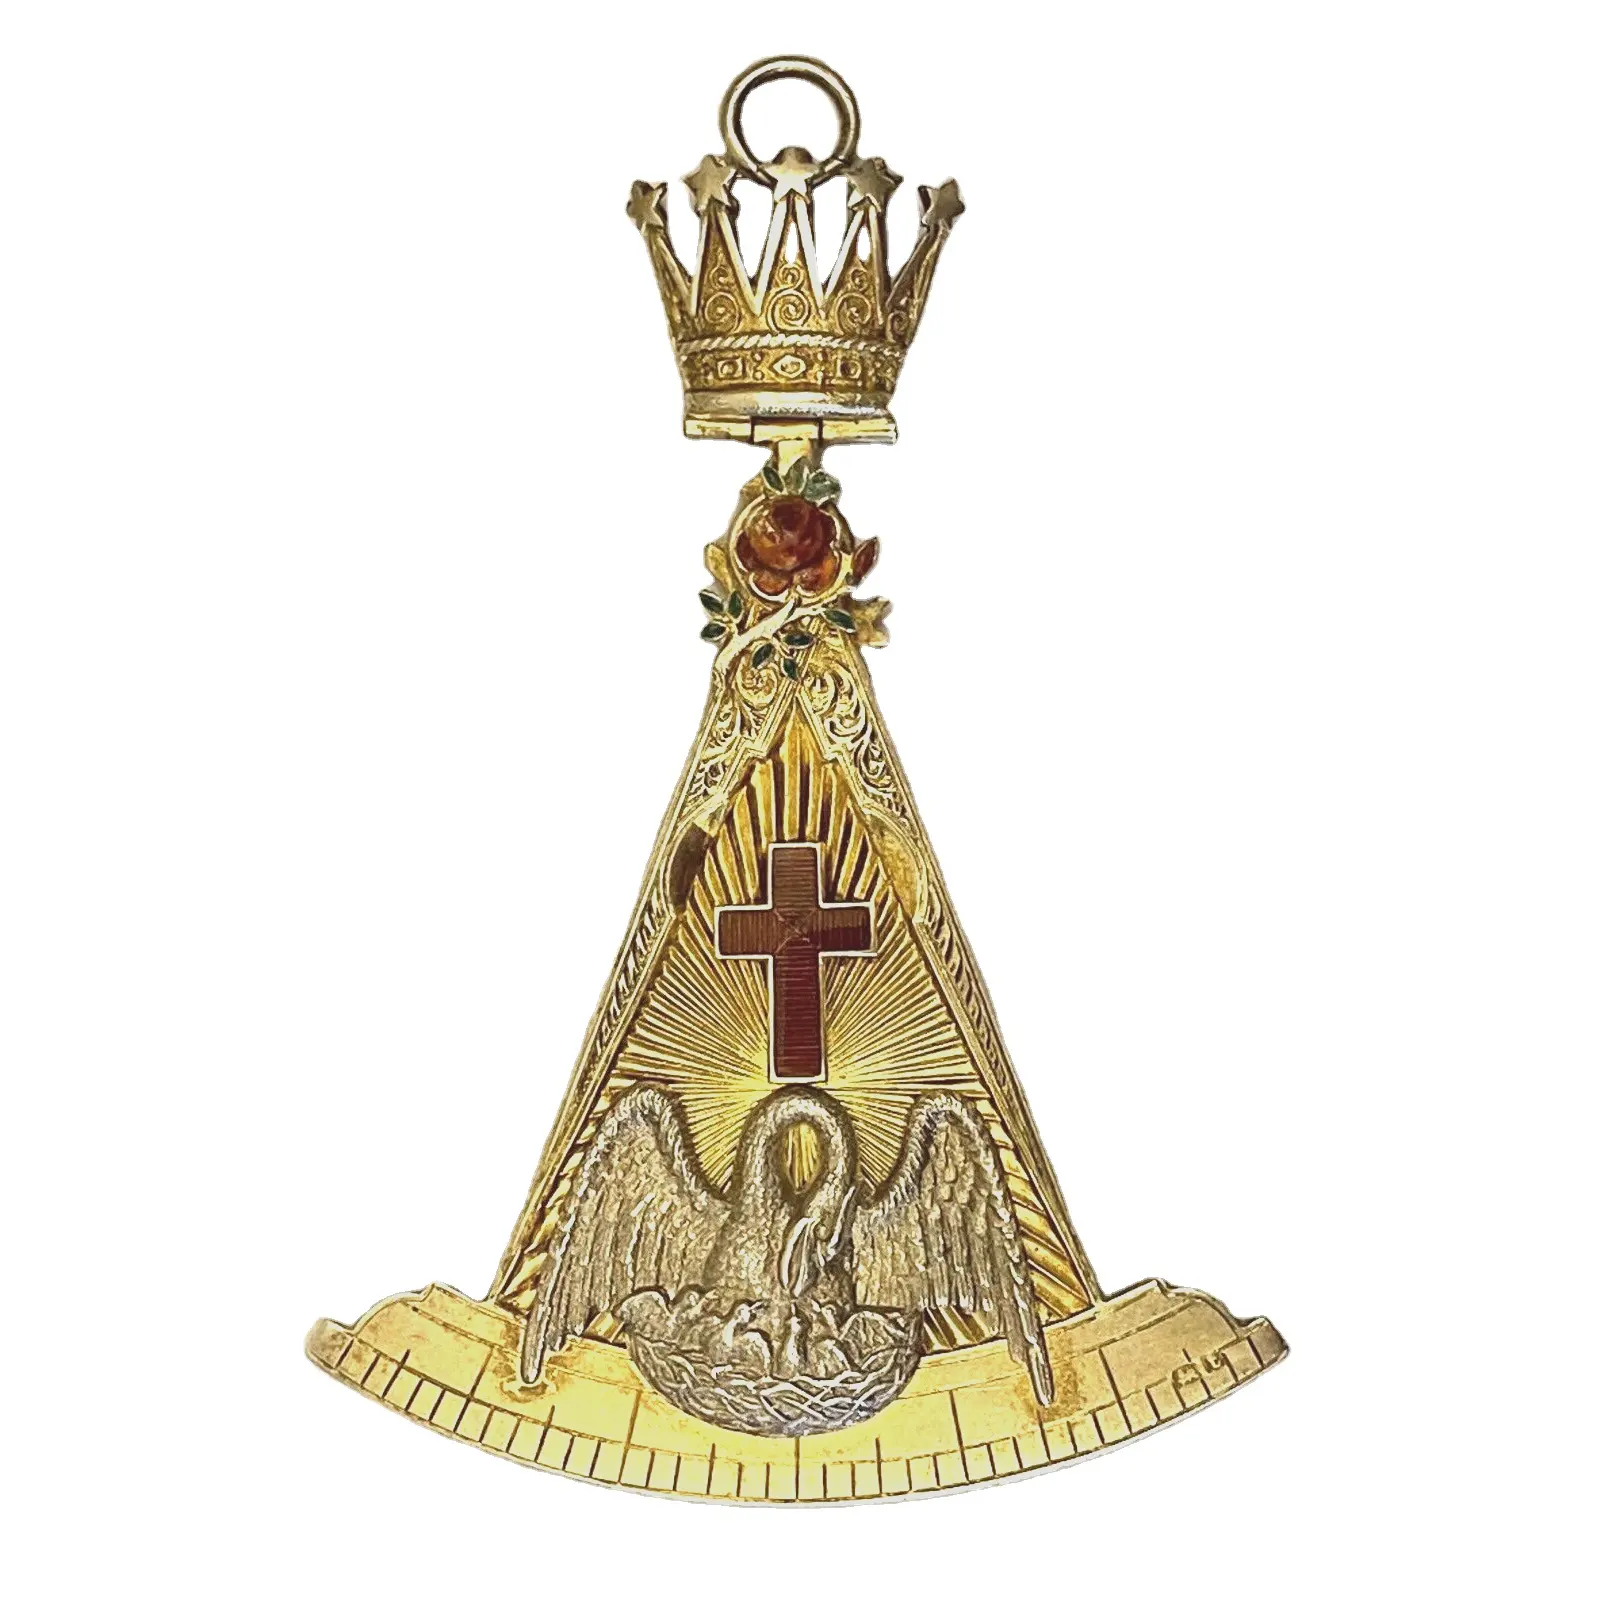 Pin kerah Templar kesatria Masonik selesai emas merah dan putih versi Enamel Pin kerah